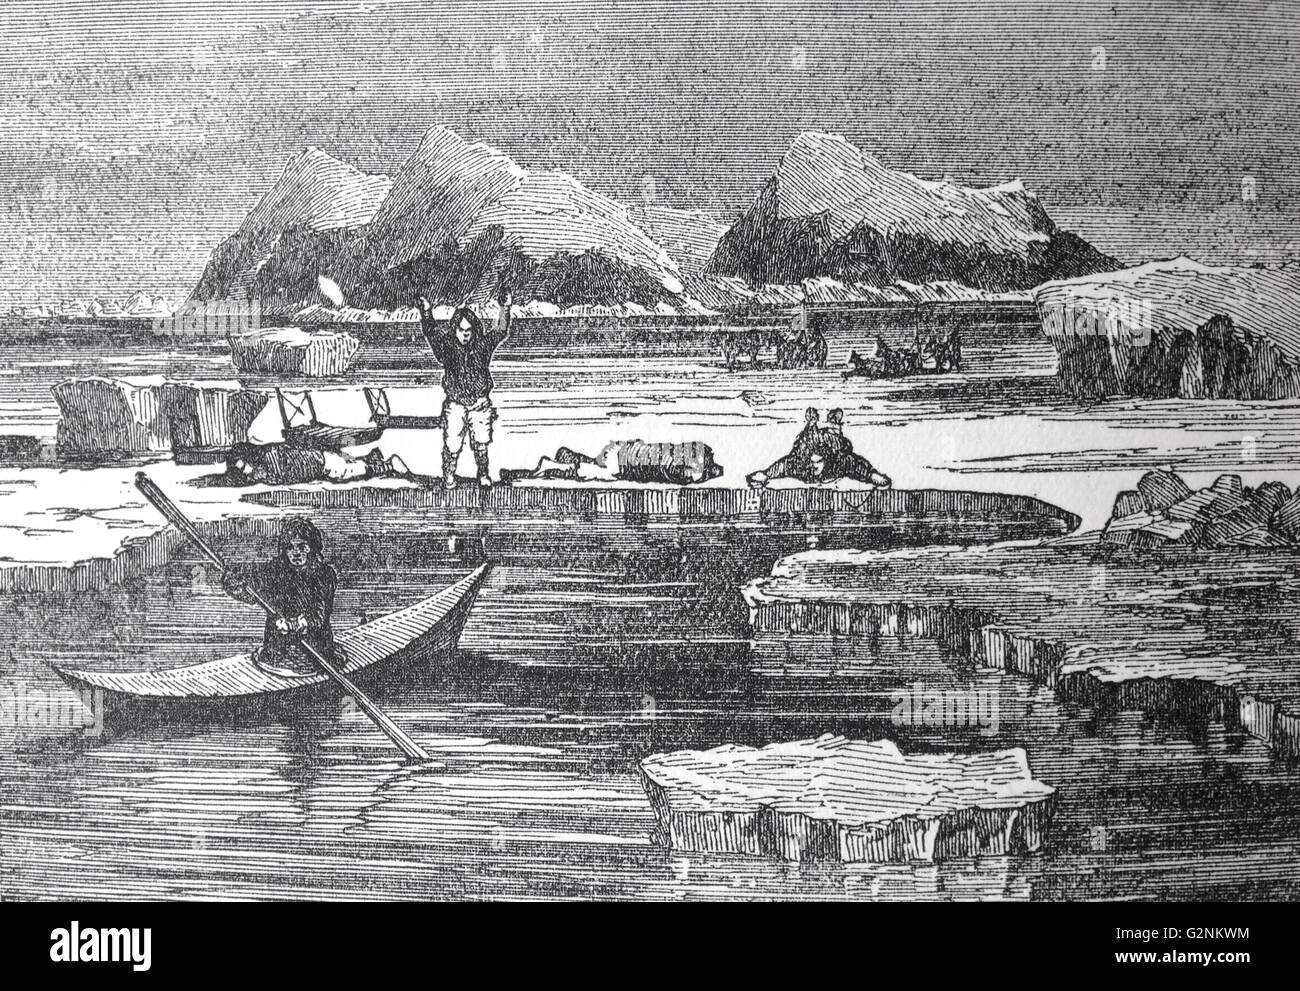 1912 Holzstich, Eskimos am Cape York der Ansatz der Fox zu beobachten. Admiral Sir Francis Leopold McClintock; Irish Explorer in der britischen Royal Navy; für seine Entdeckungen in der kanadischen Arktis Archipel bekannt Stockfoto